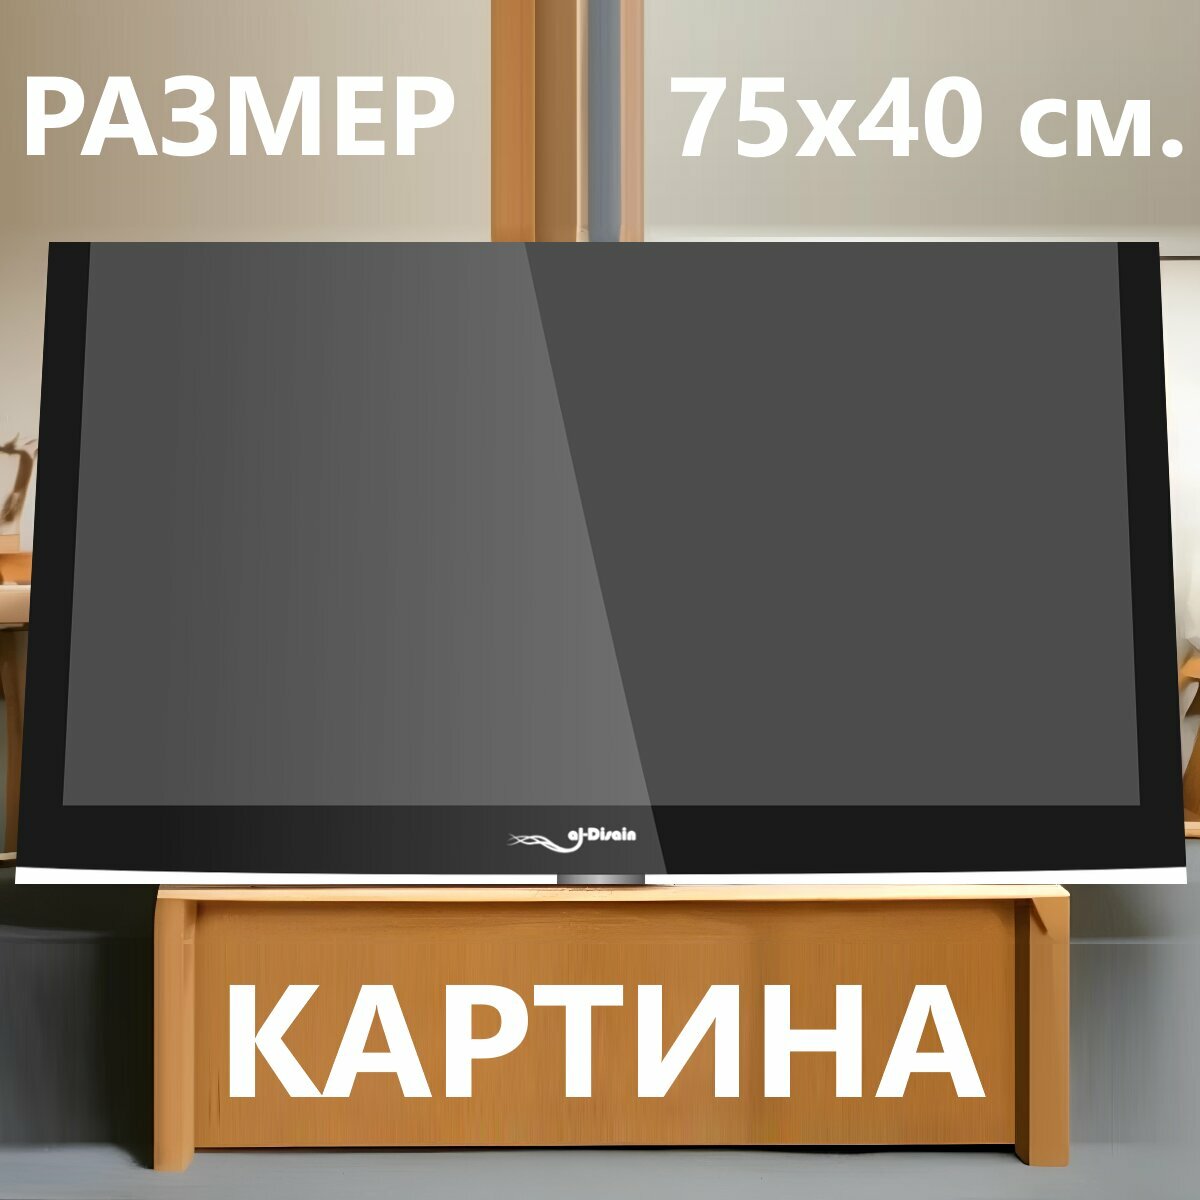 Картина на холсте "Телевизор с плоским экраном, плазменный телевизор, телевидение" на подрамнике 75х40 см. для интерьера